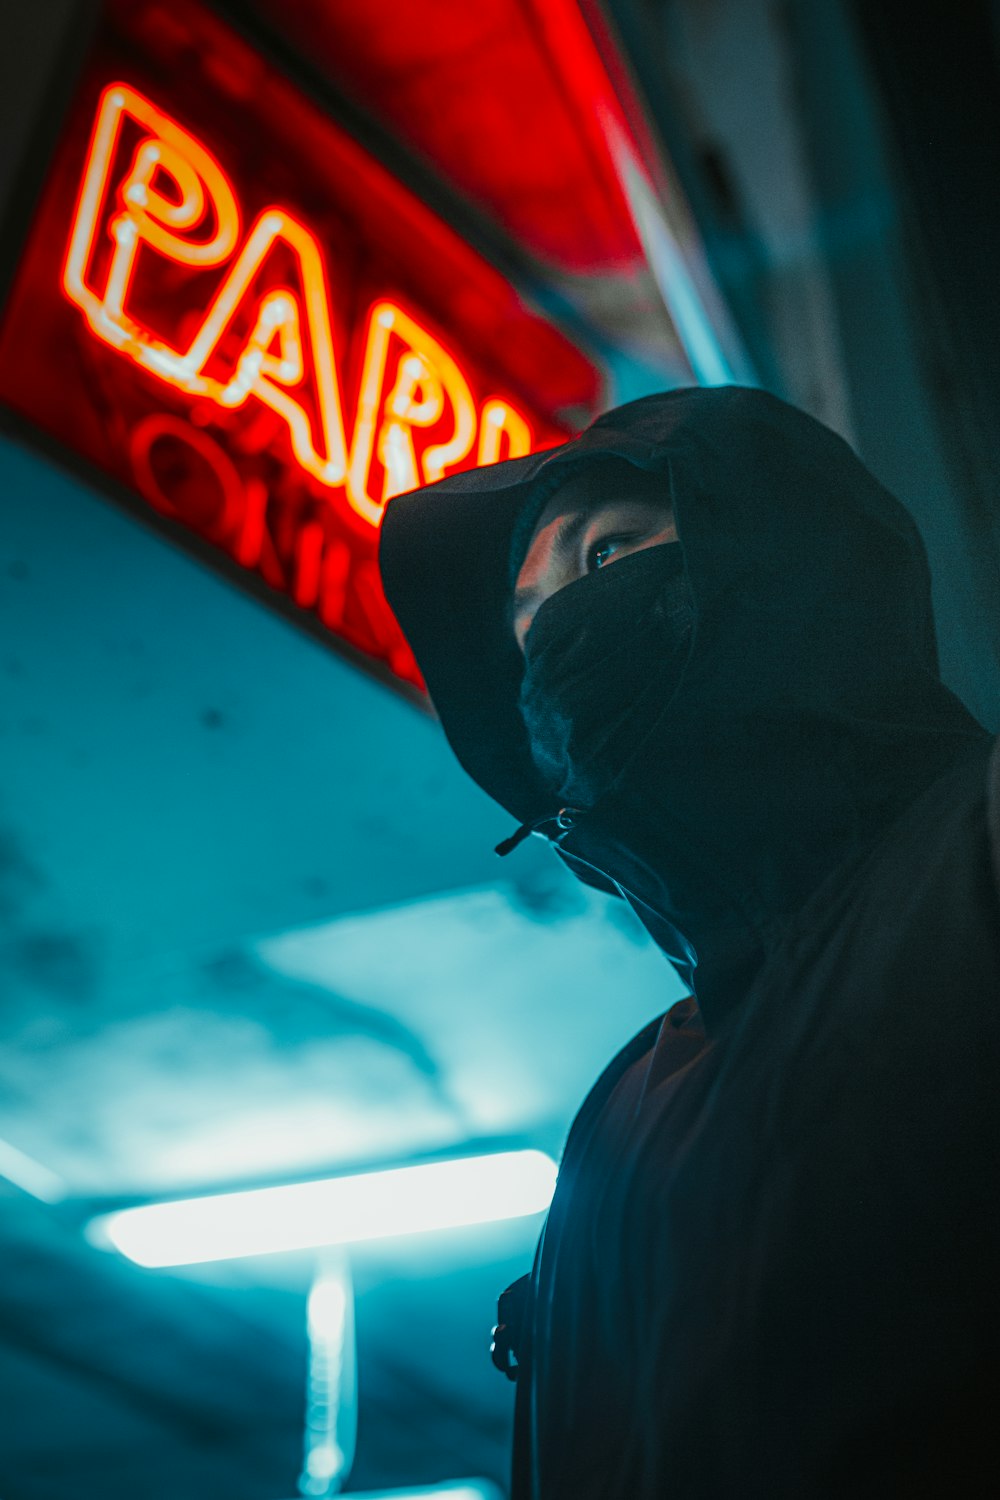 Mann in schwarzem Kapuzenpullover mit schwarzer Maske